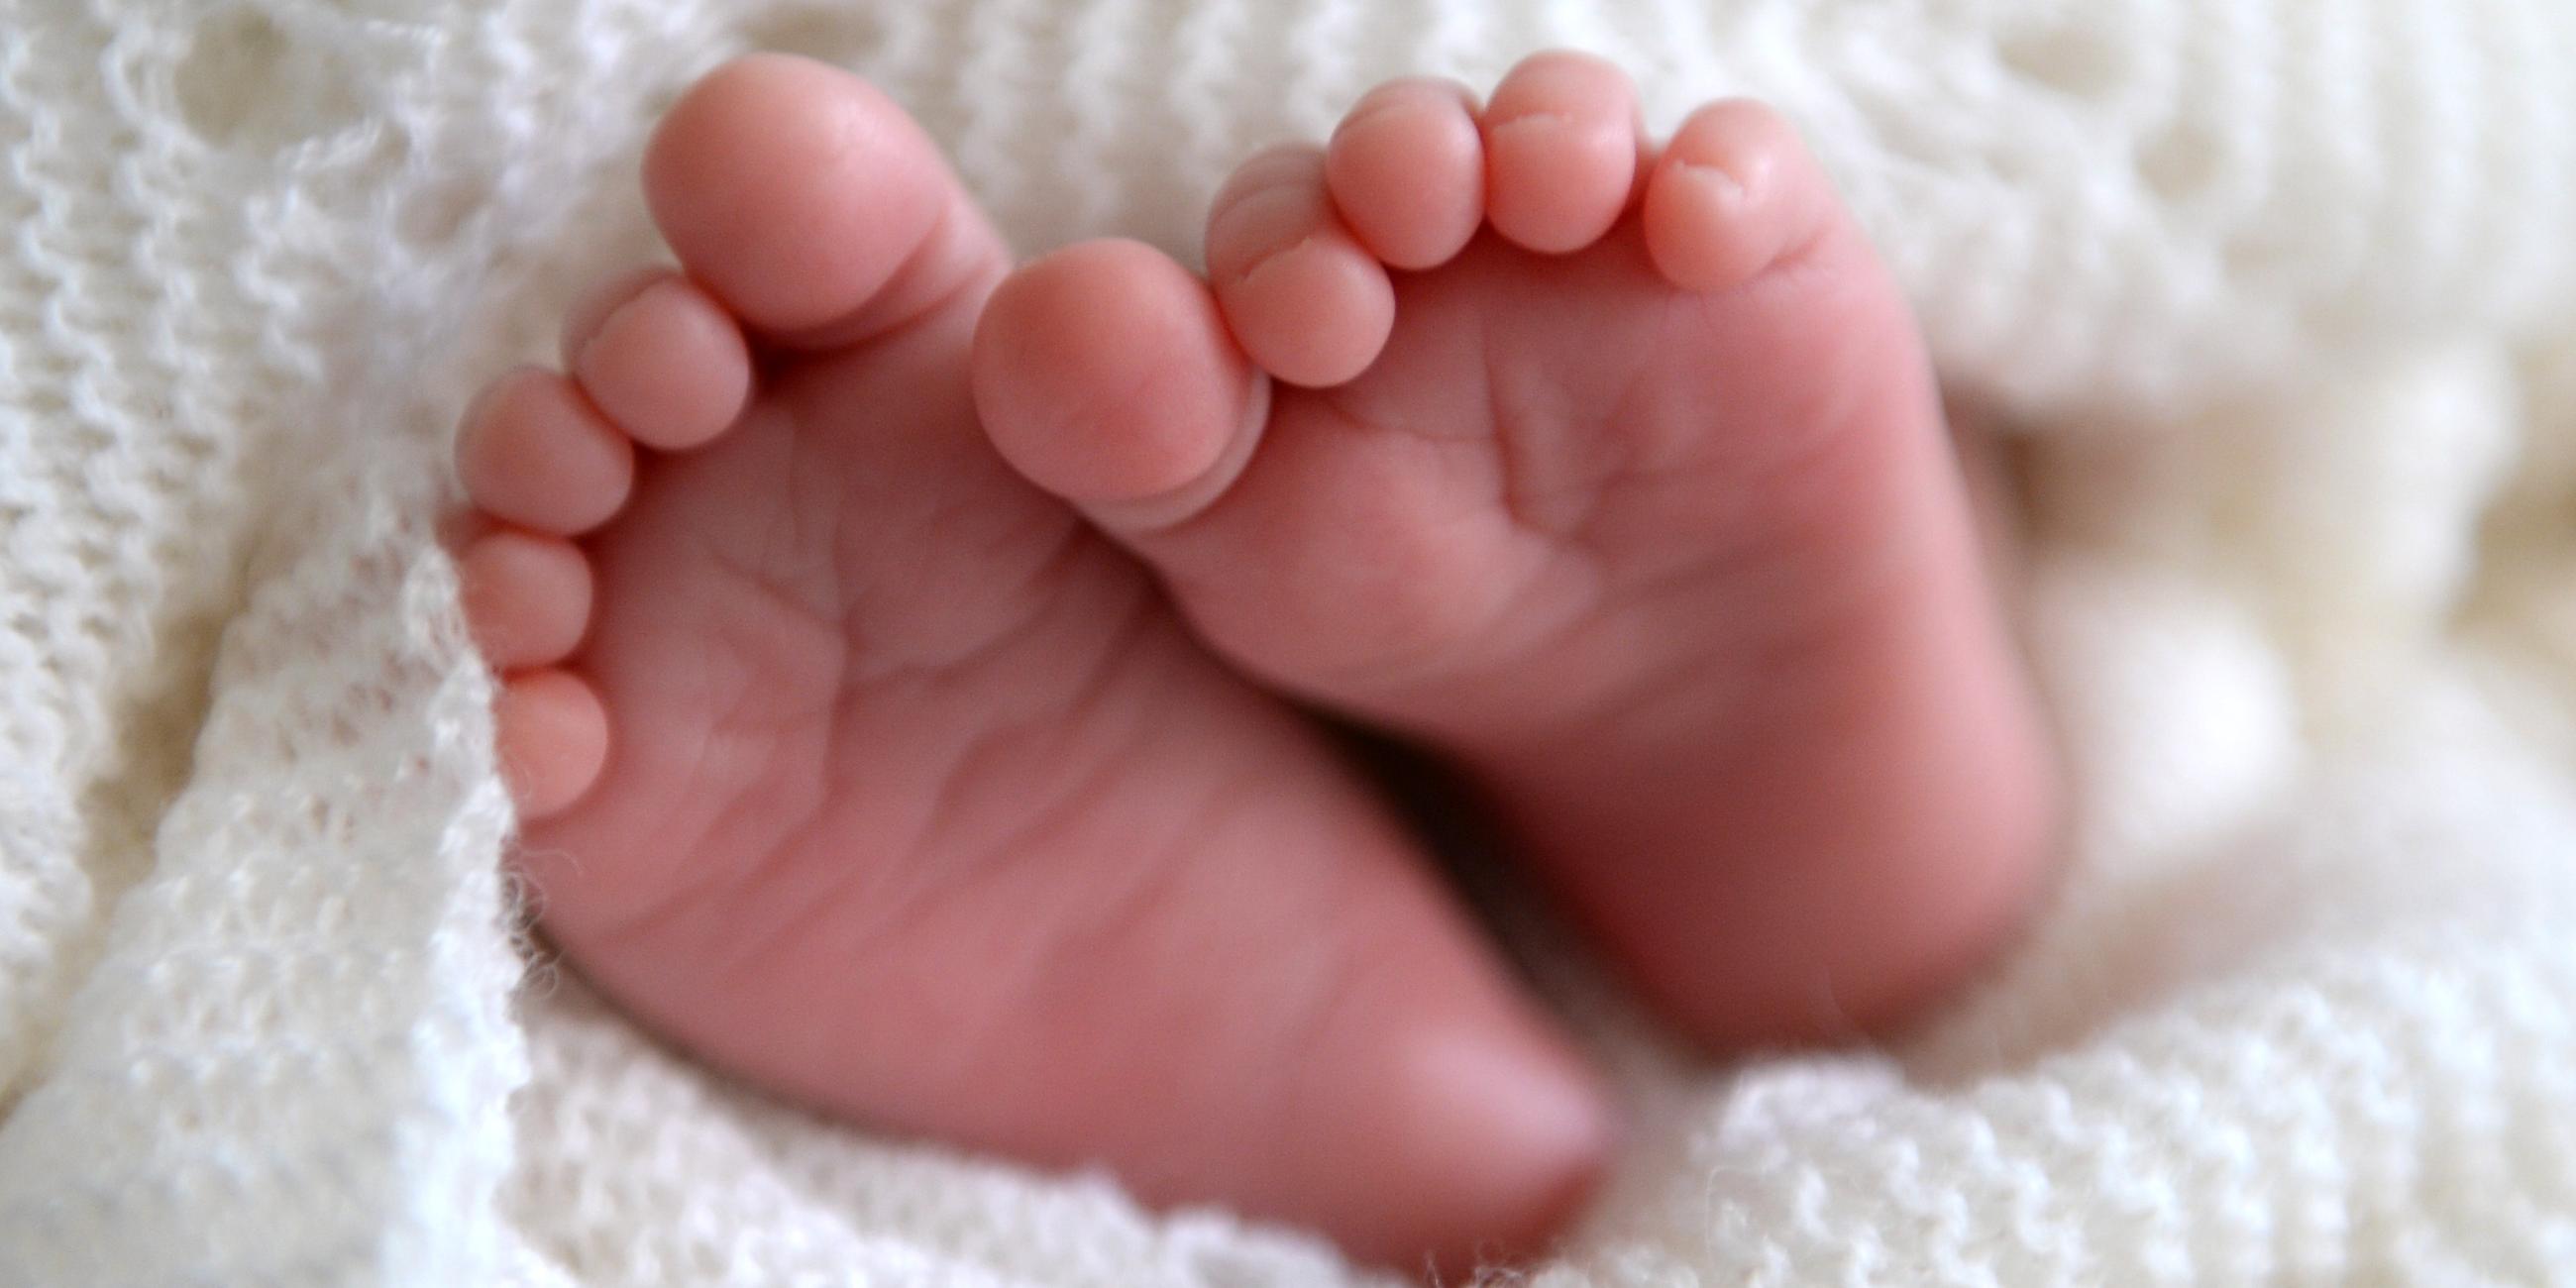 Archiv: Die Füßchen eines neugeborenen Kindes